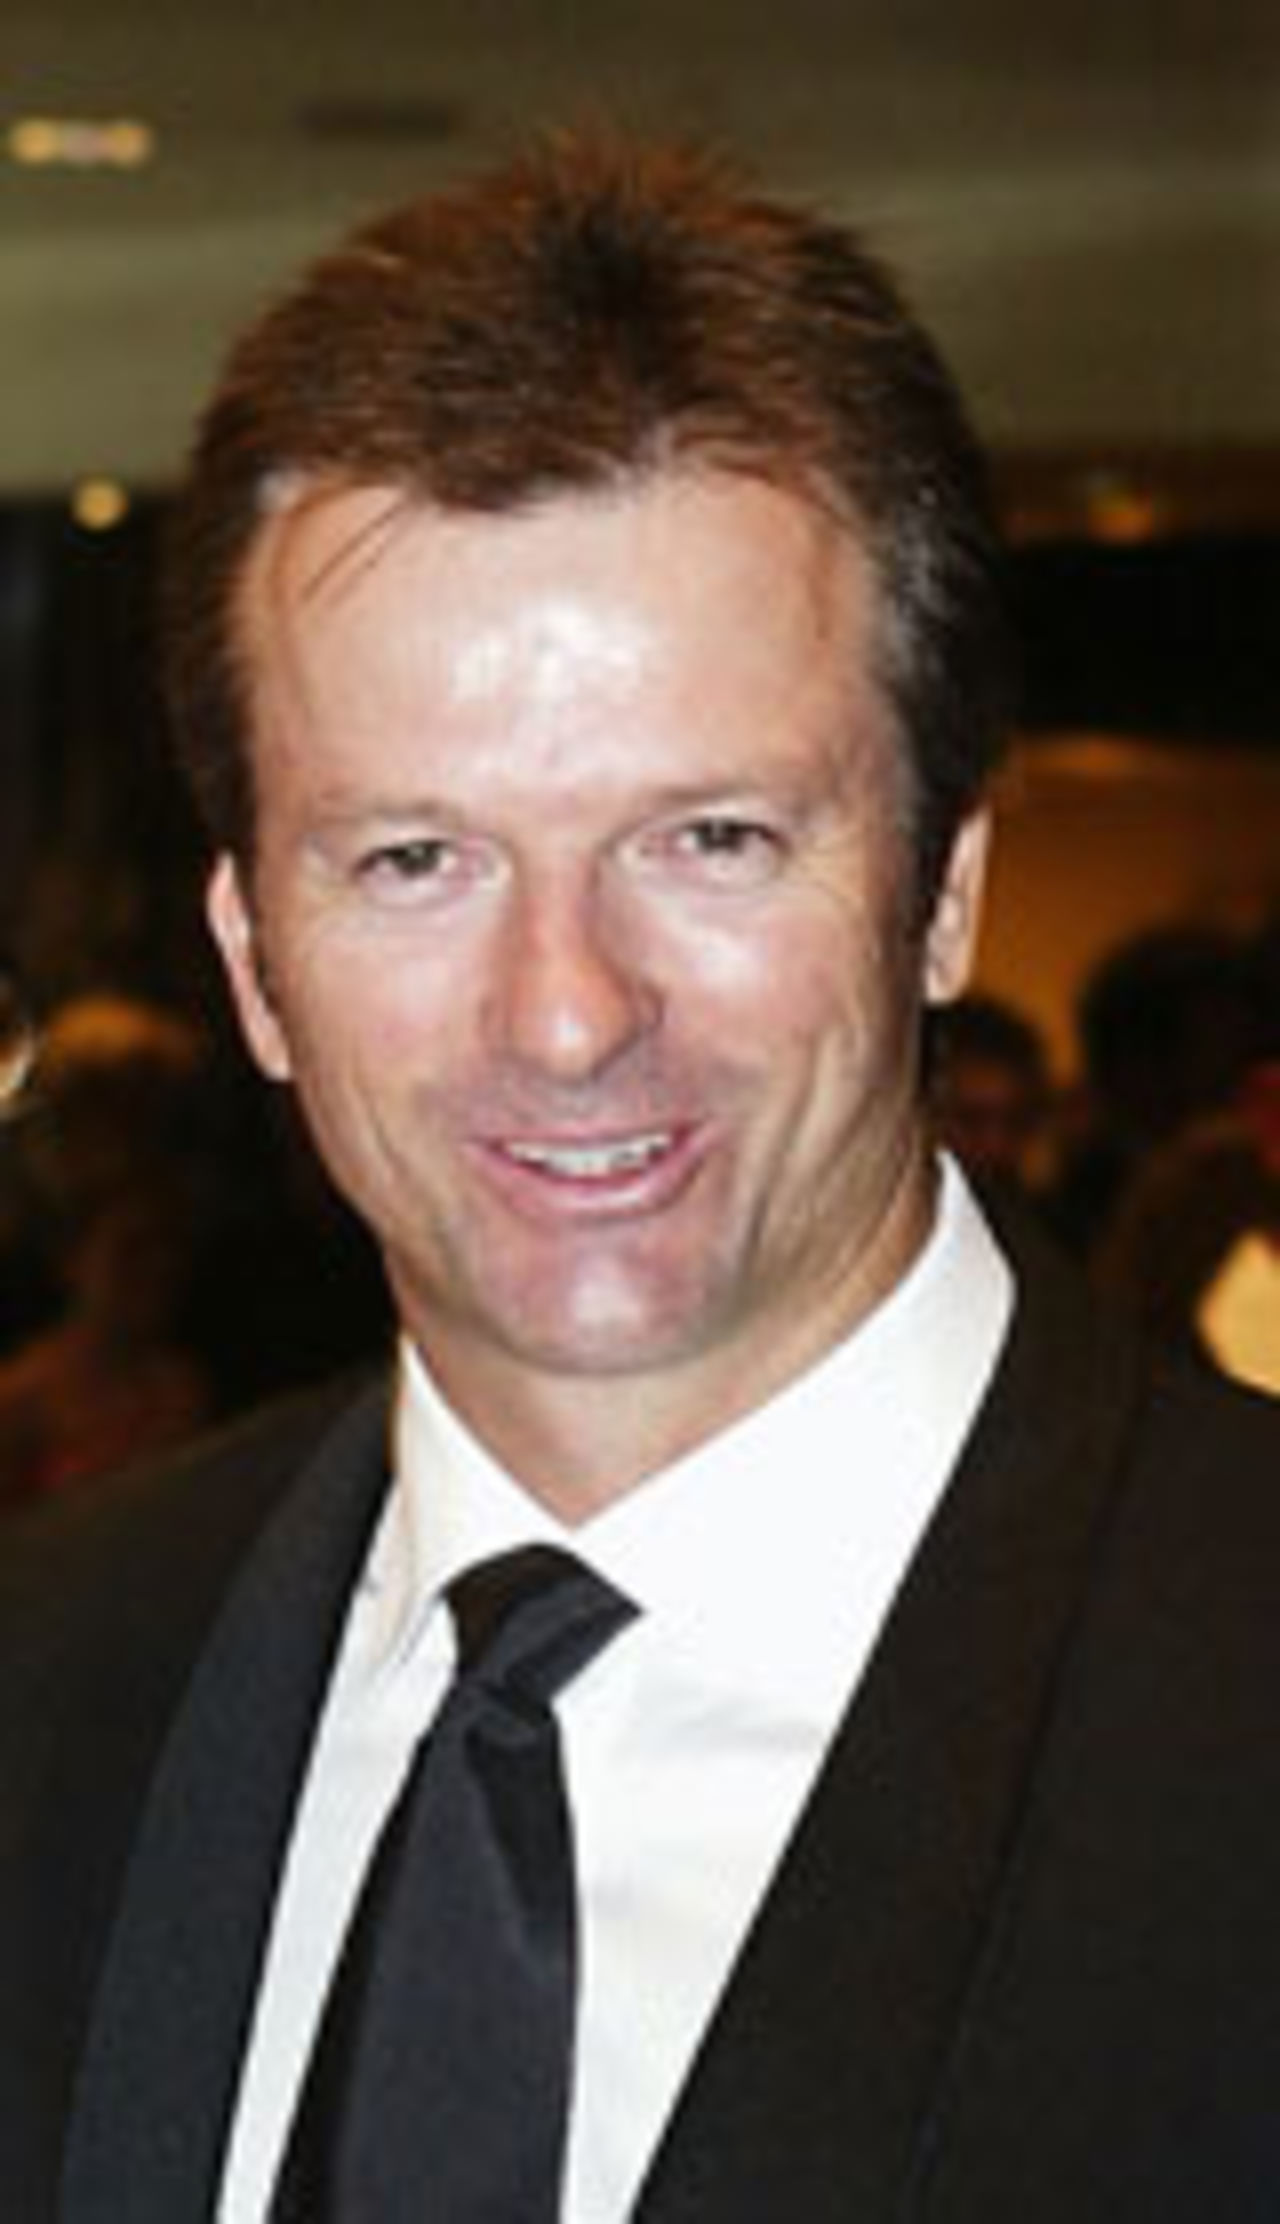 Steve Waugh, the former captain of Australia, February 12 2004